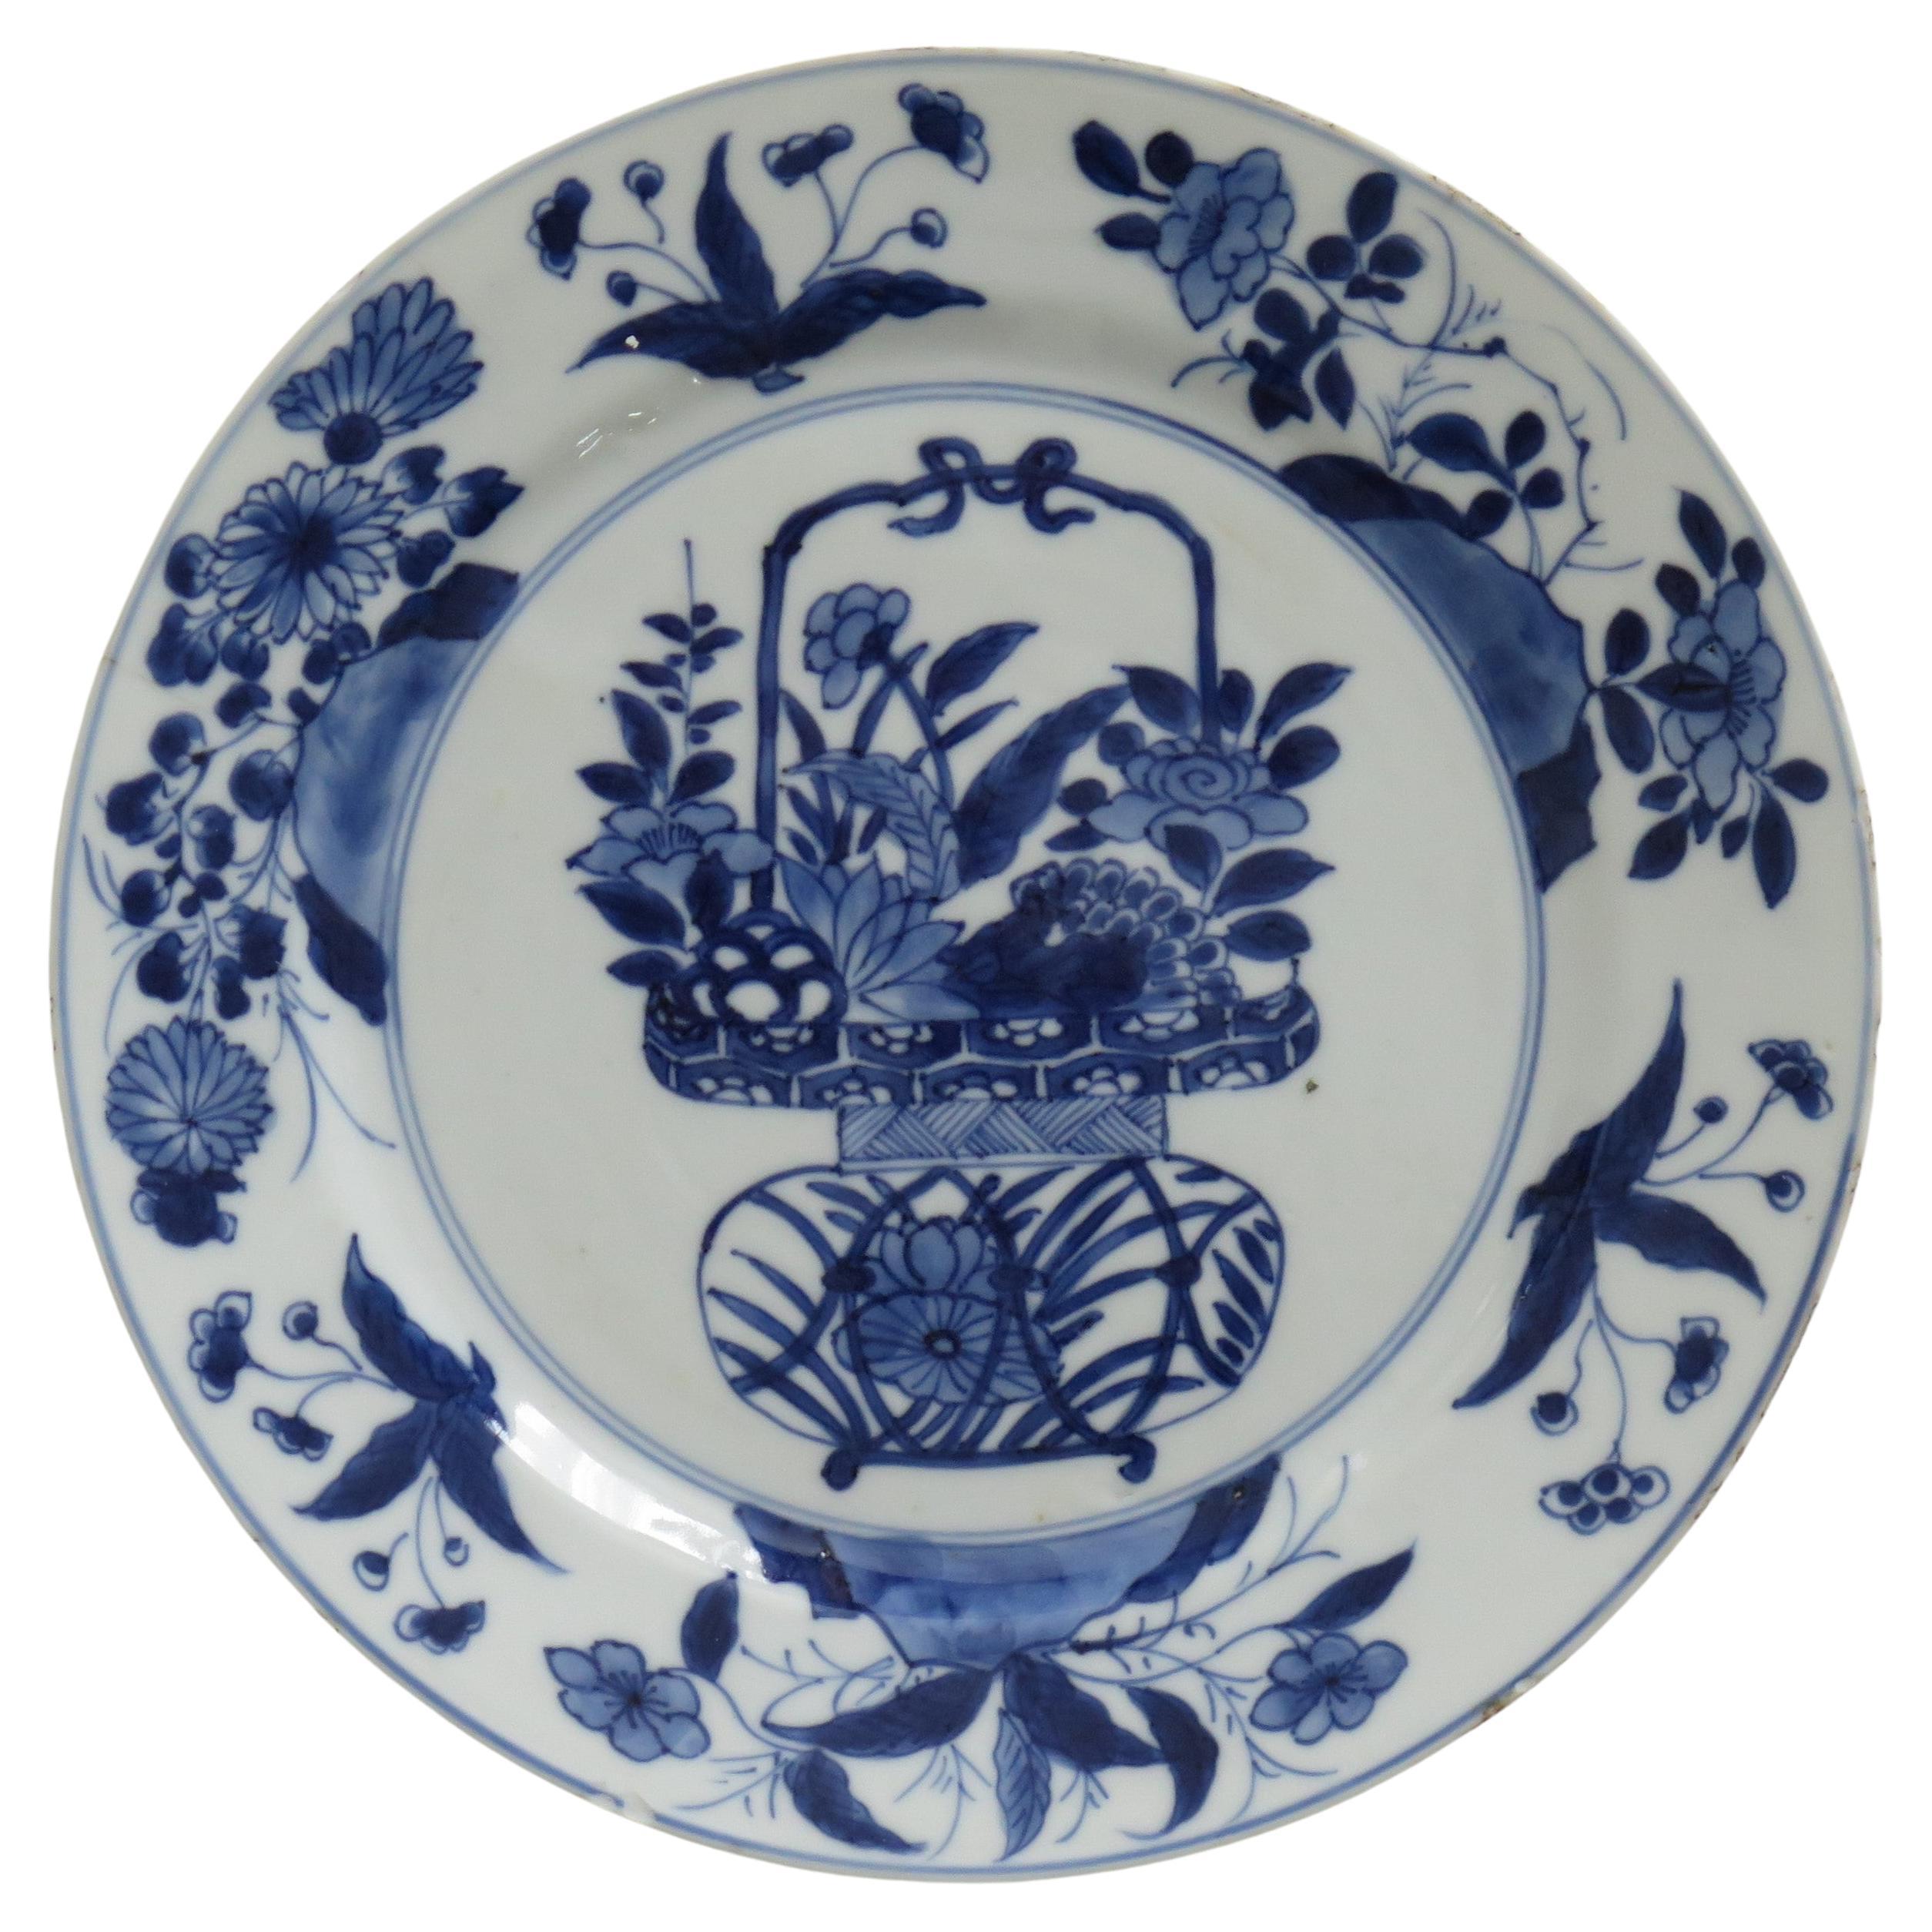 Corbeille à fleurs en porcelaine bleue et blanche avec marque Kangxi et assiette chinoise d'époque, vers 1700